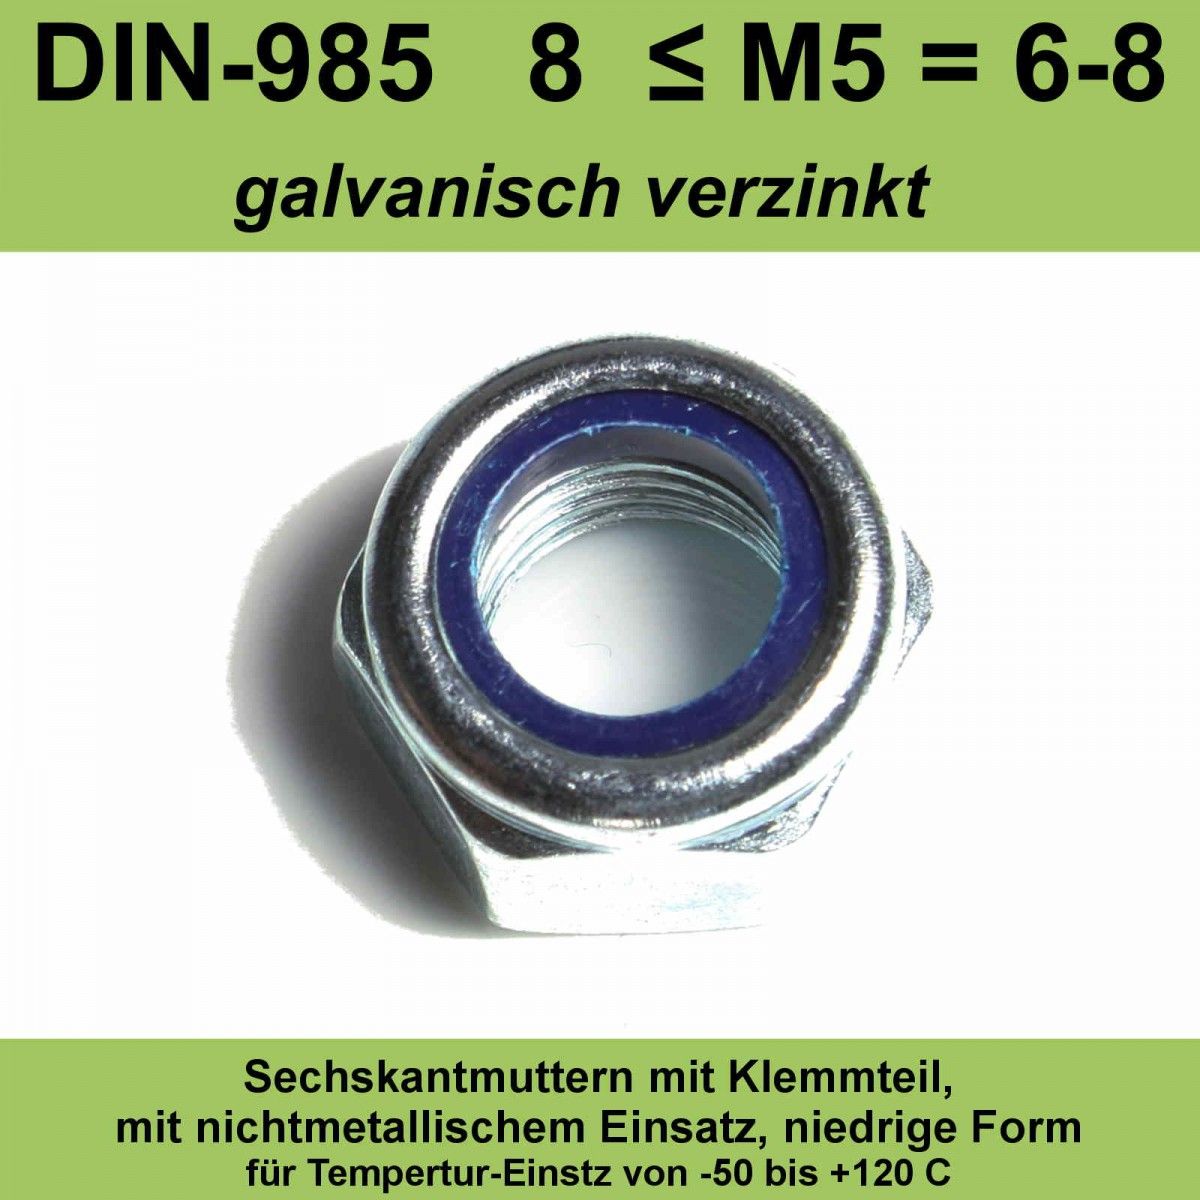 M6 DIN 985 8 verzinkt Sechskantmutter Klemmteil